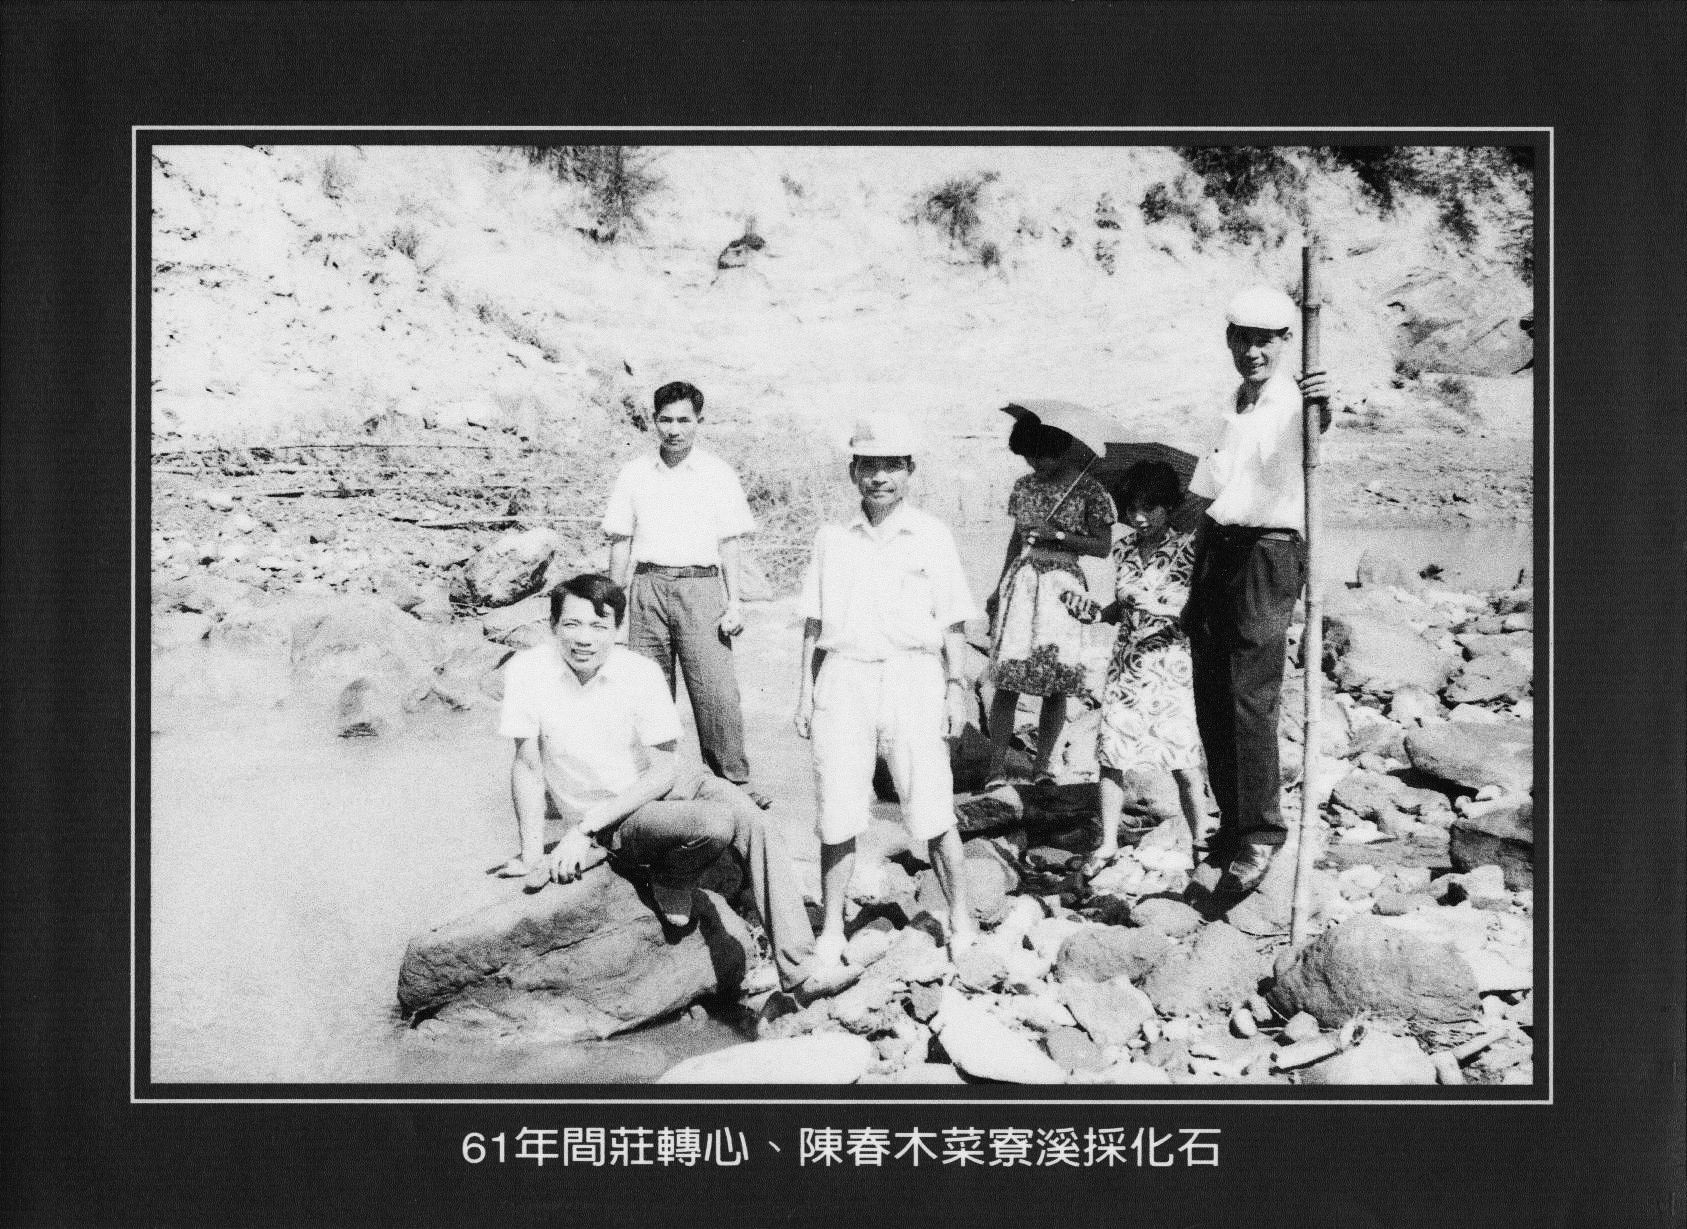 圖說：1972年菜寮溪採化石留影
資料提供：臺南市政府文化局左鎮化石園區